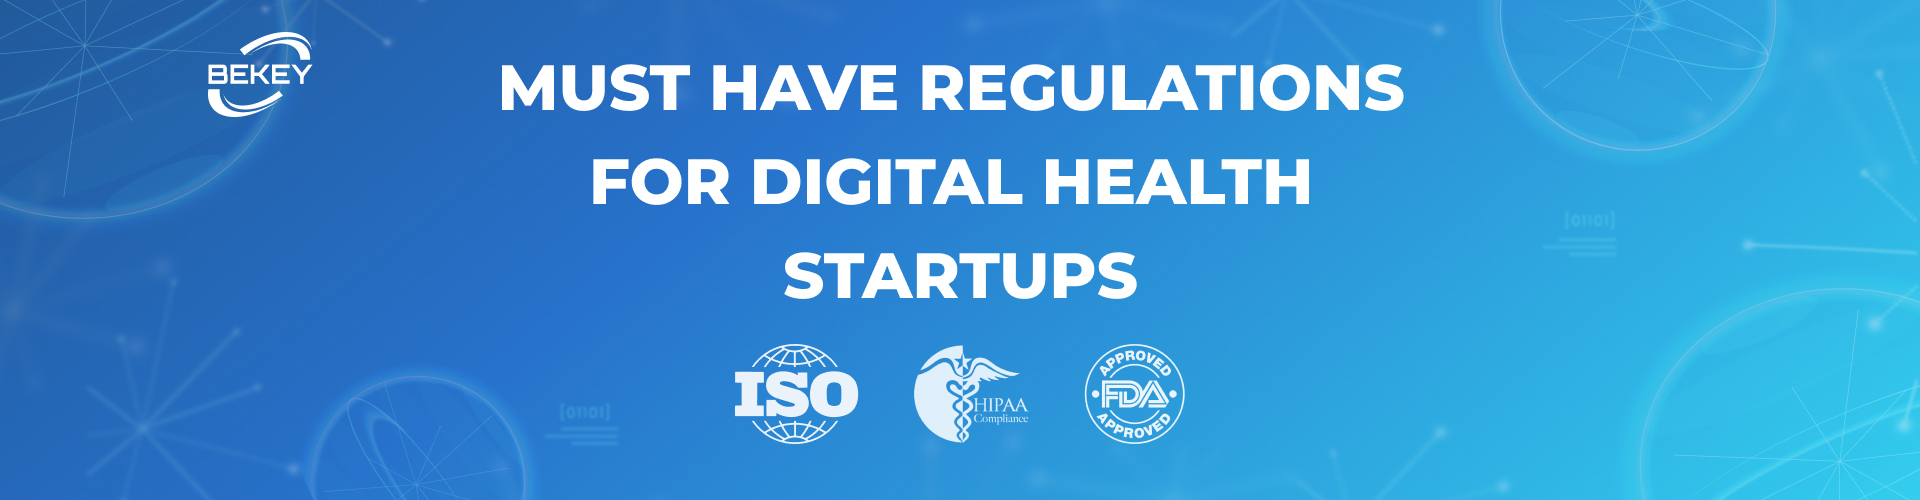 Must-Have Regulations for Digital Health Startups - image